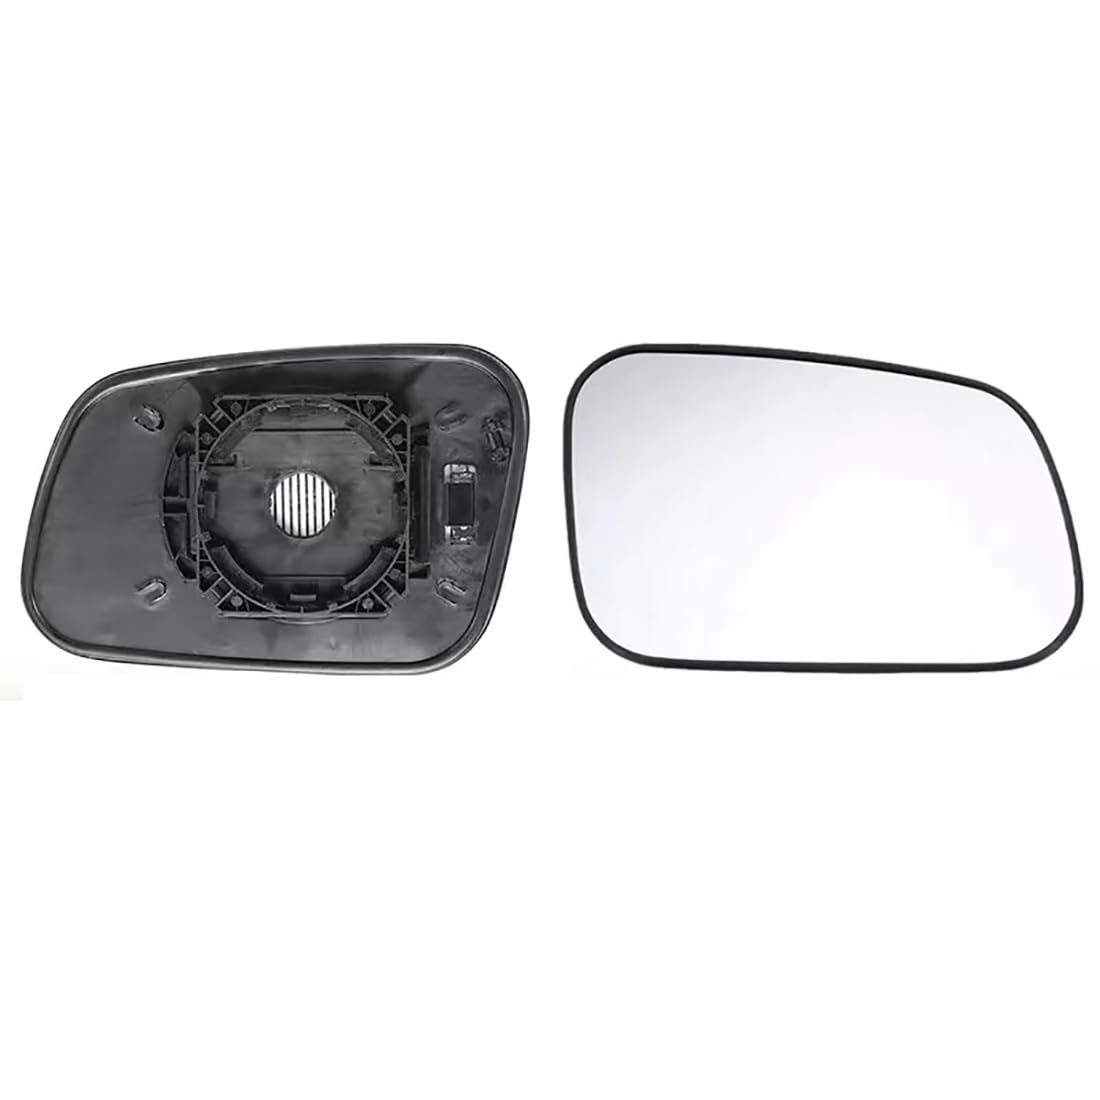 Beheizter Autorückspiegel für Land Rover Discovery 2 1998-2004,beschlagfreier Rückspiegel,Seitenspiegelglas Fürs Auto, 2PS von Zyfwzc